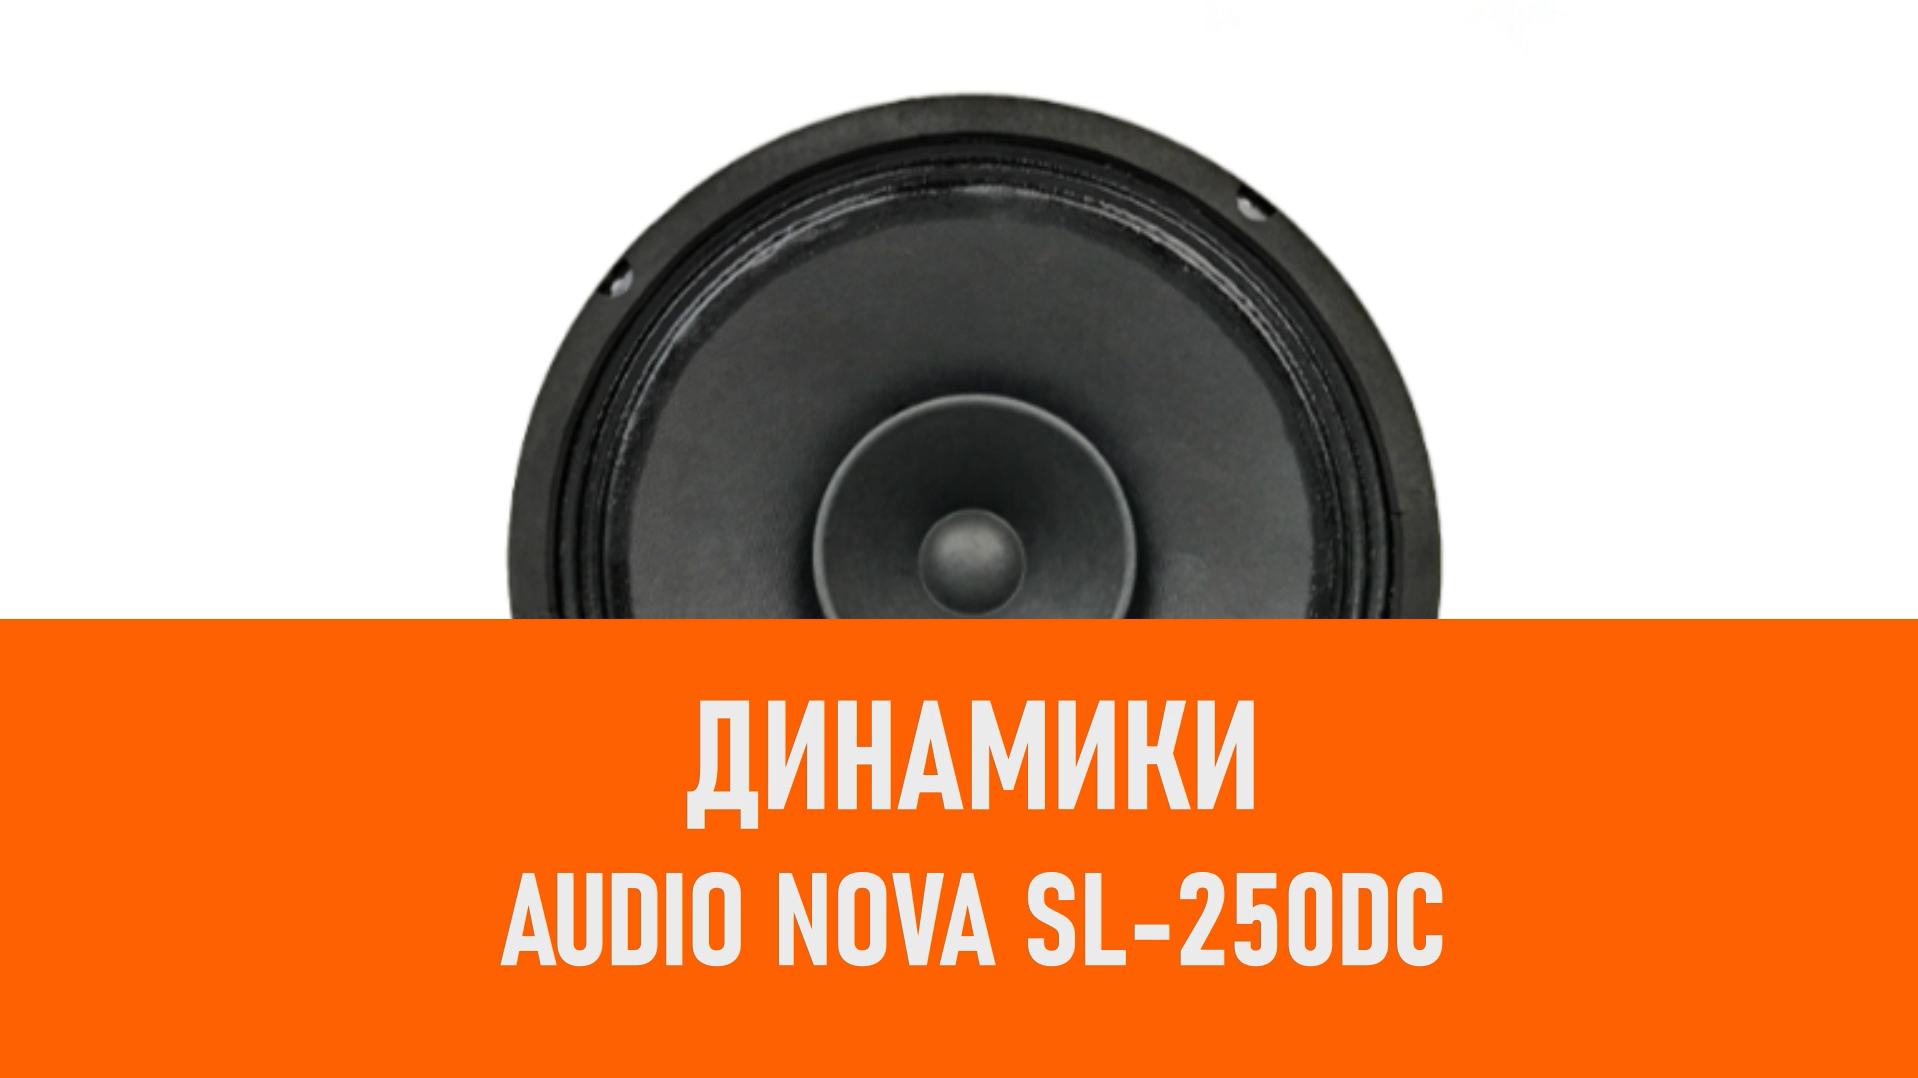 Распаковка динамиков AUDIO NOVA SL-250DC